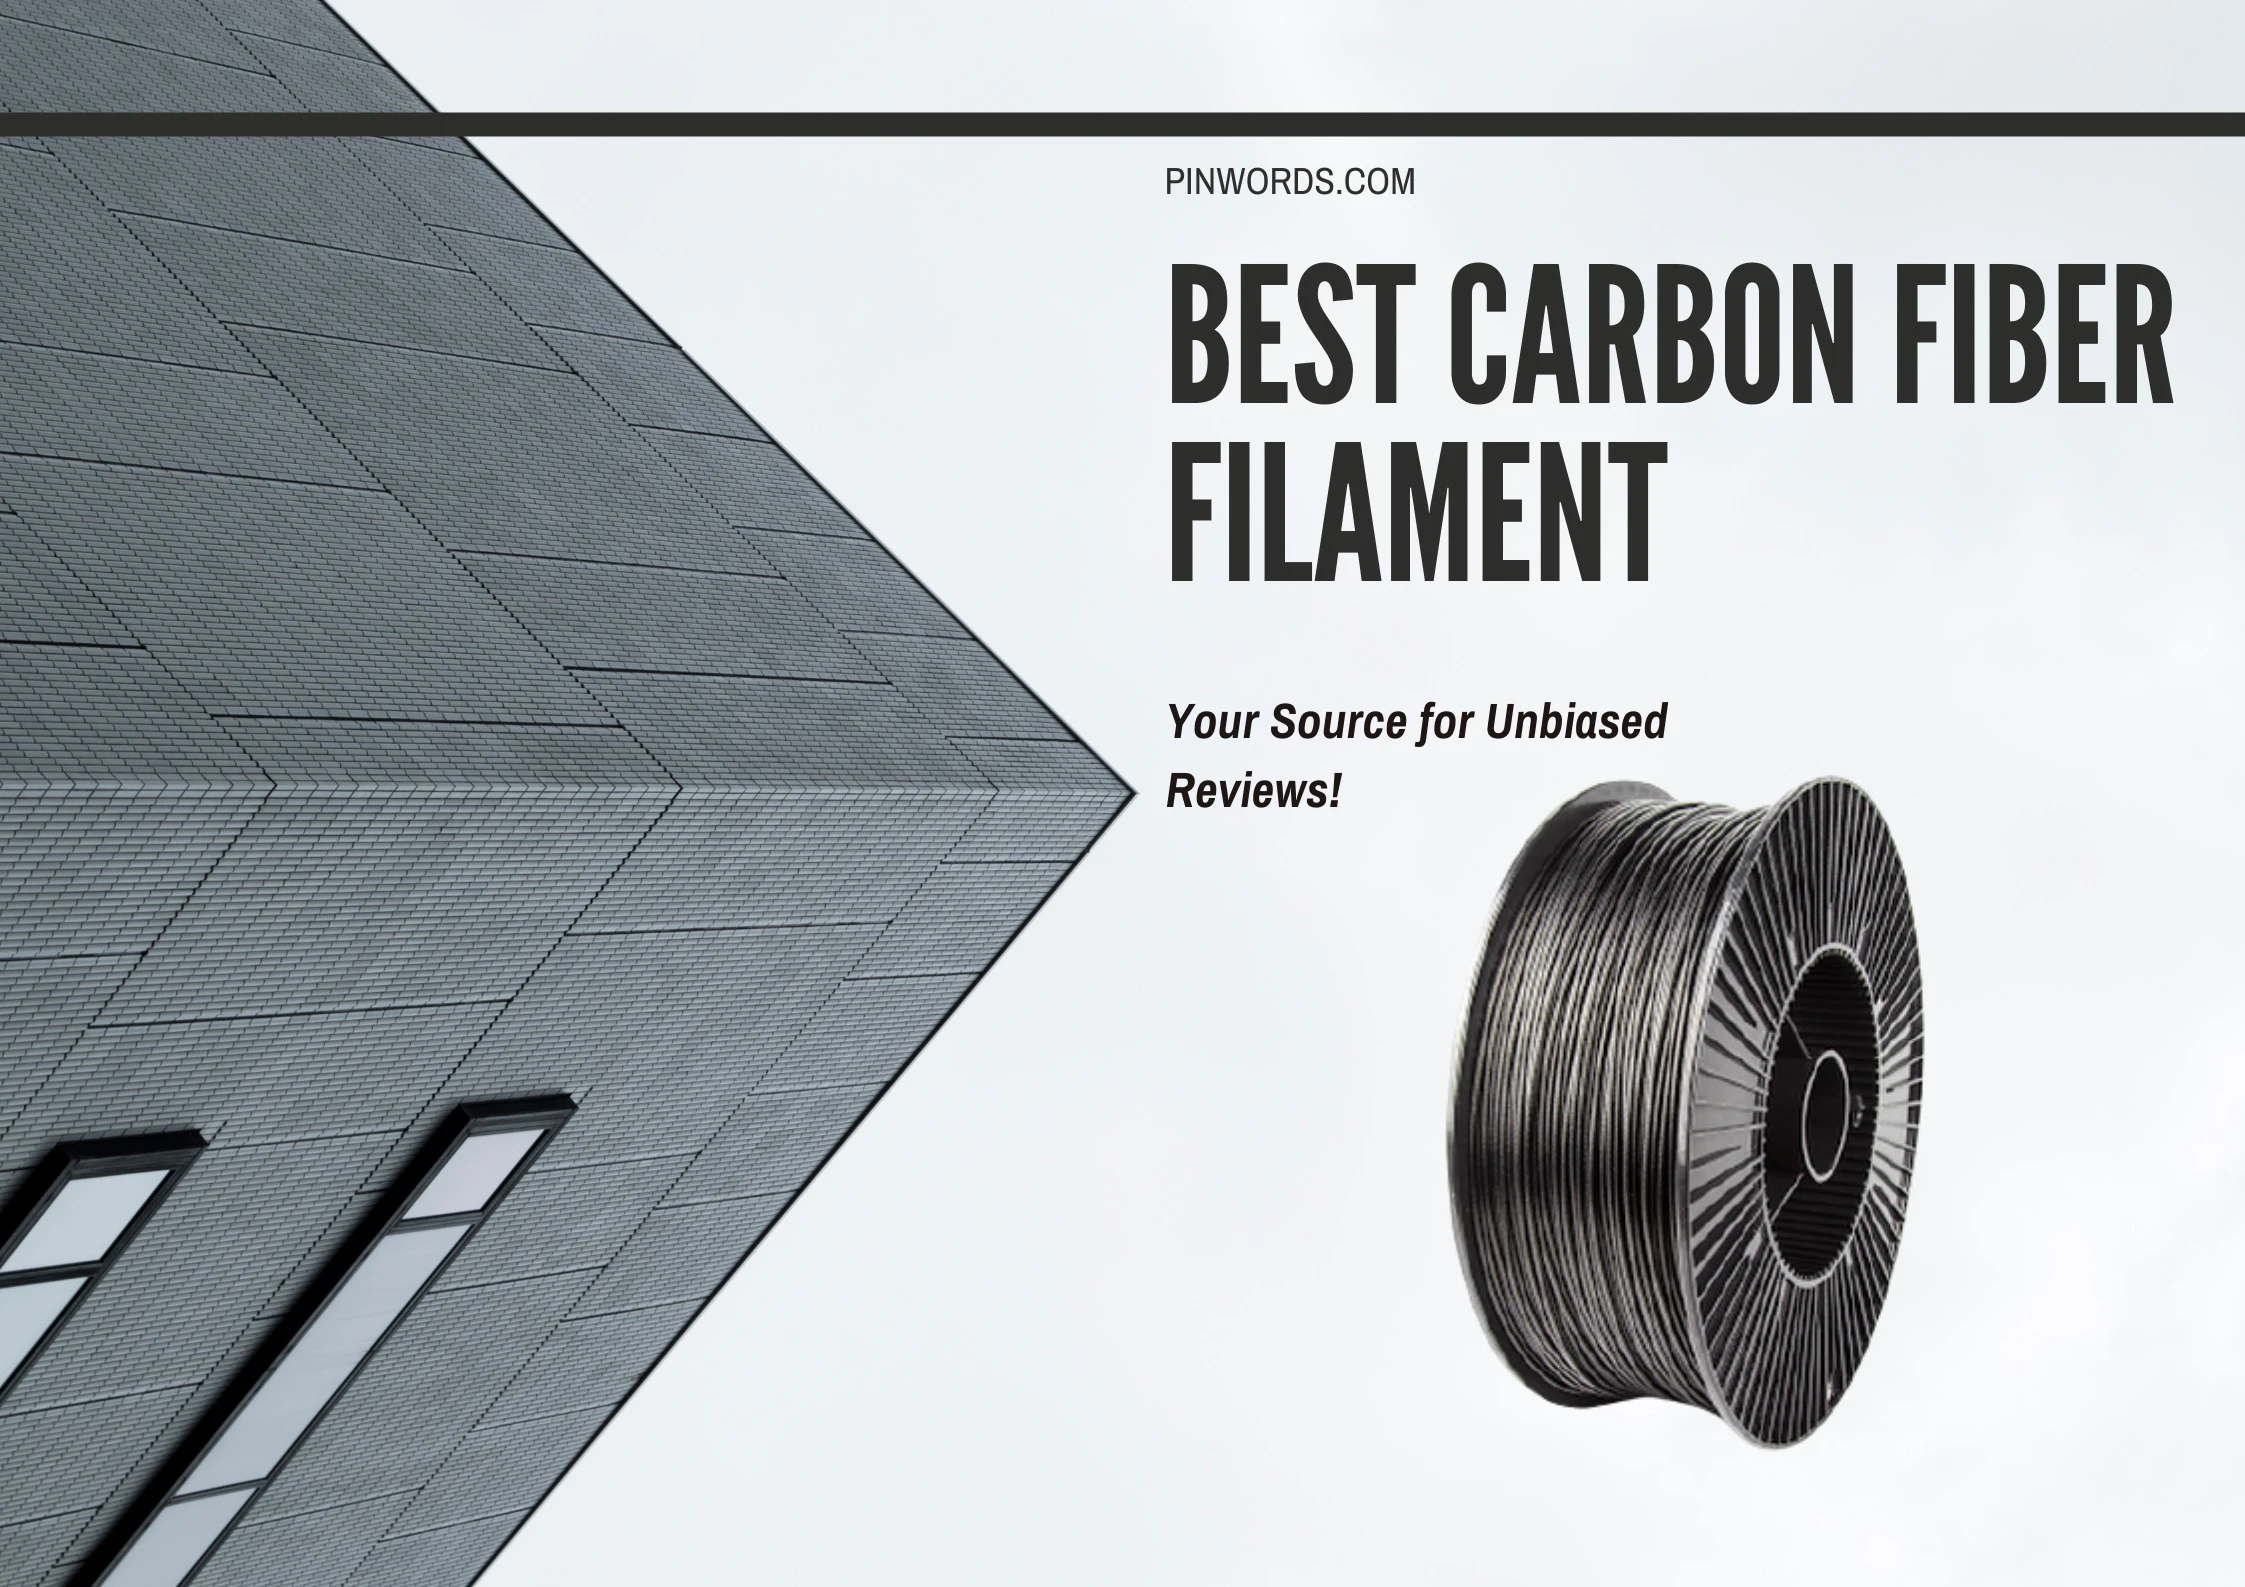  Top 5 Carbon Fiber Filaments Reviews 